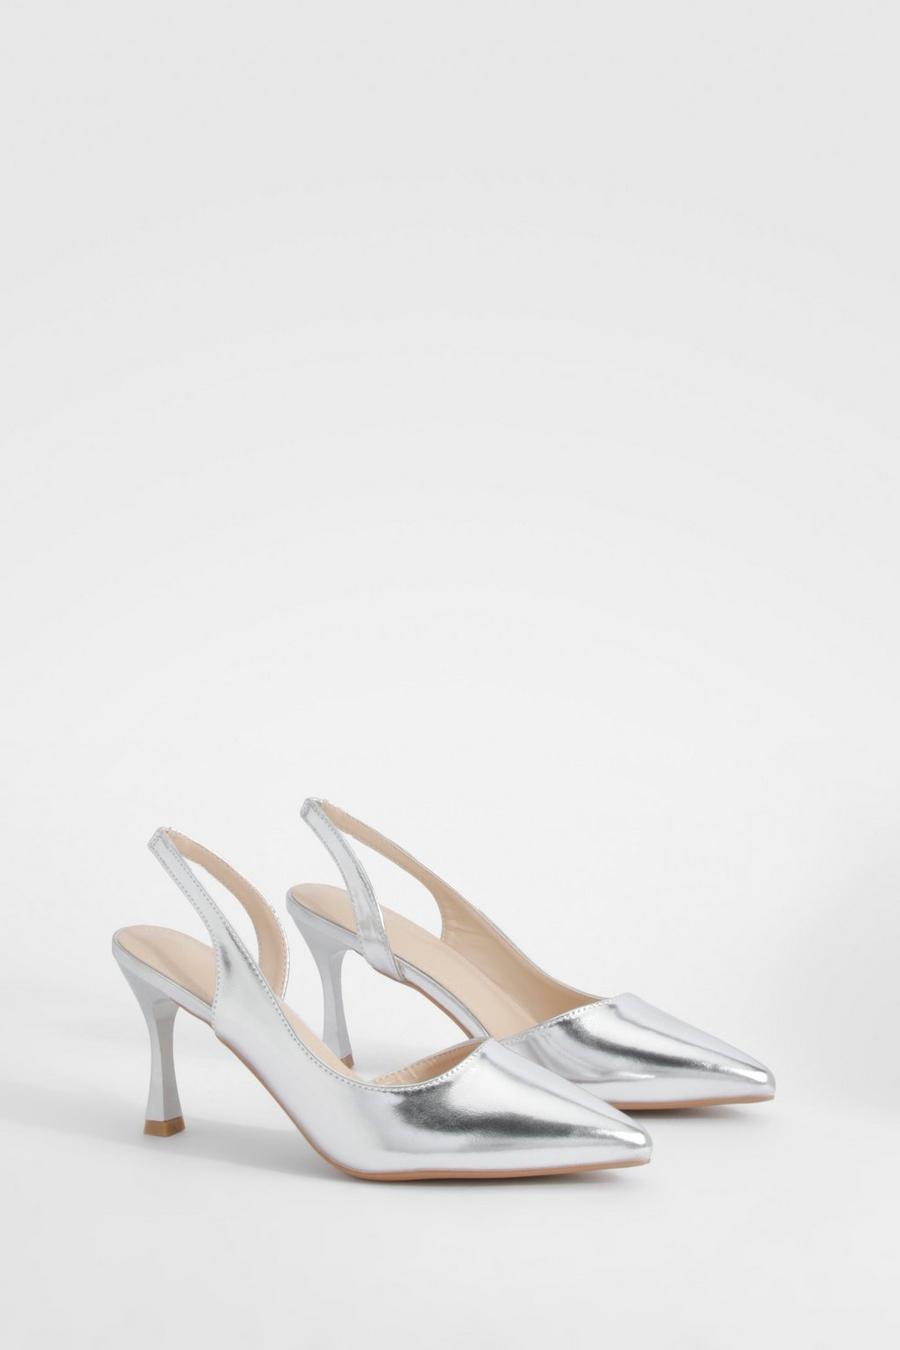 Chaussures métallisées asymétriques à talon, Silver